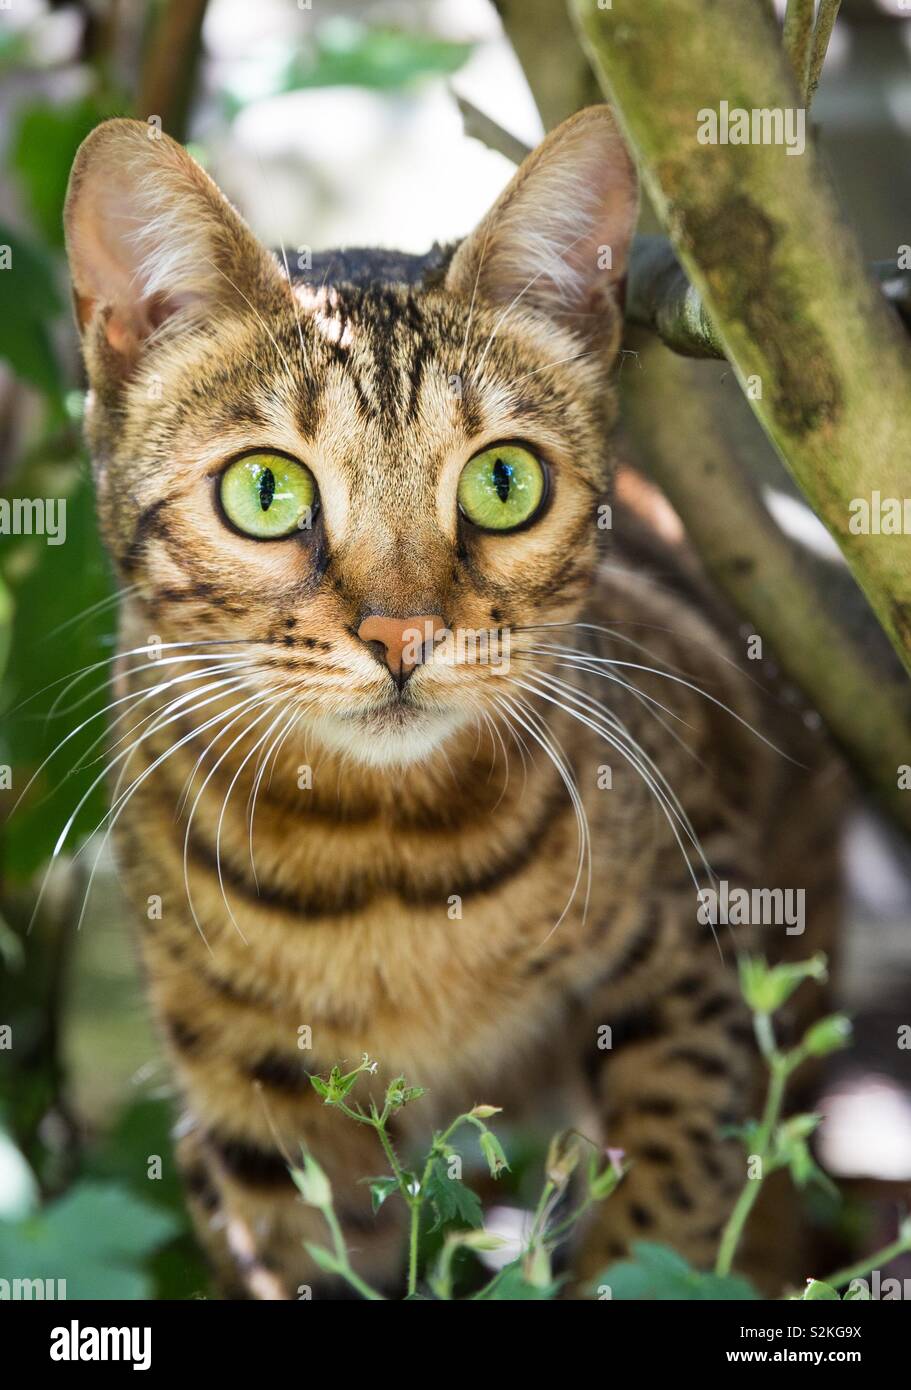 Un chat à rayures avec de grands yeux verts la chasse ses proies dans un sous-bois de jardin Banque D'Images